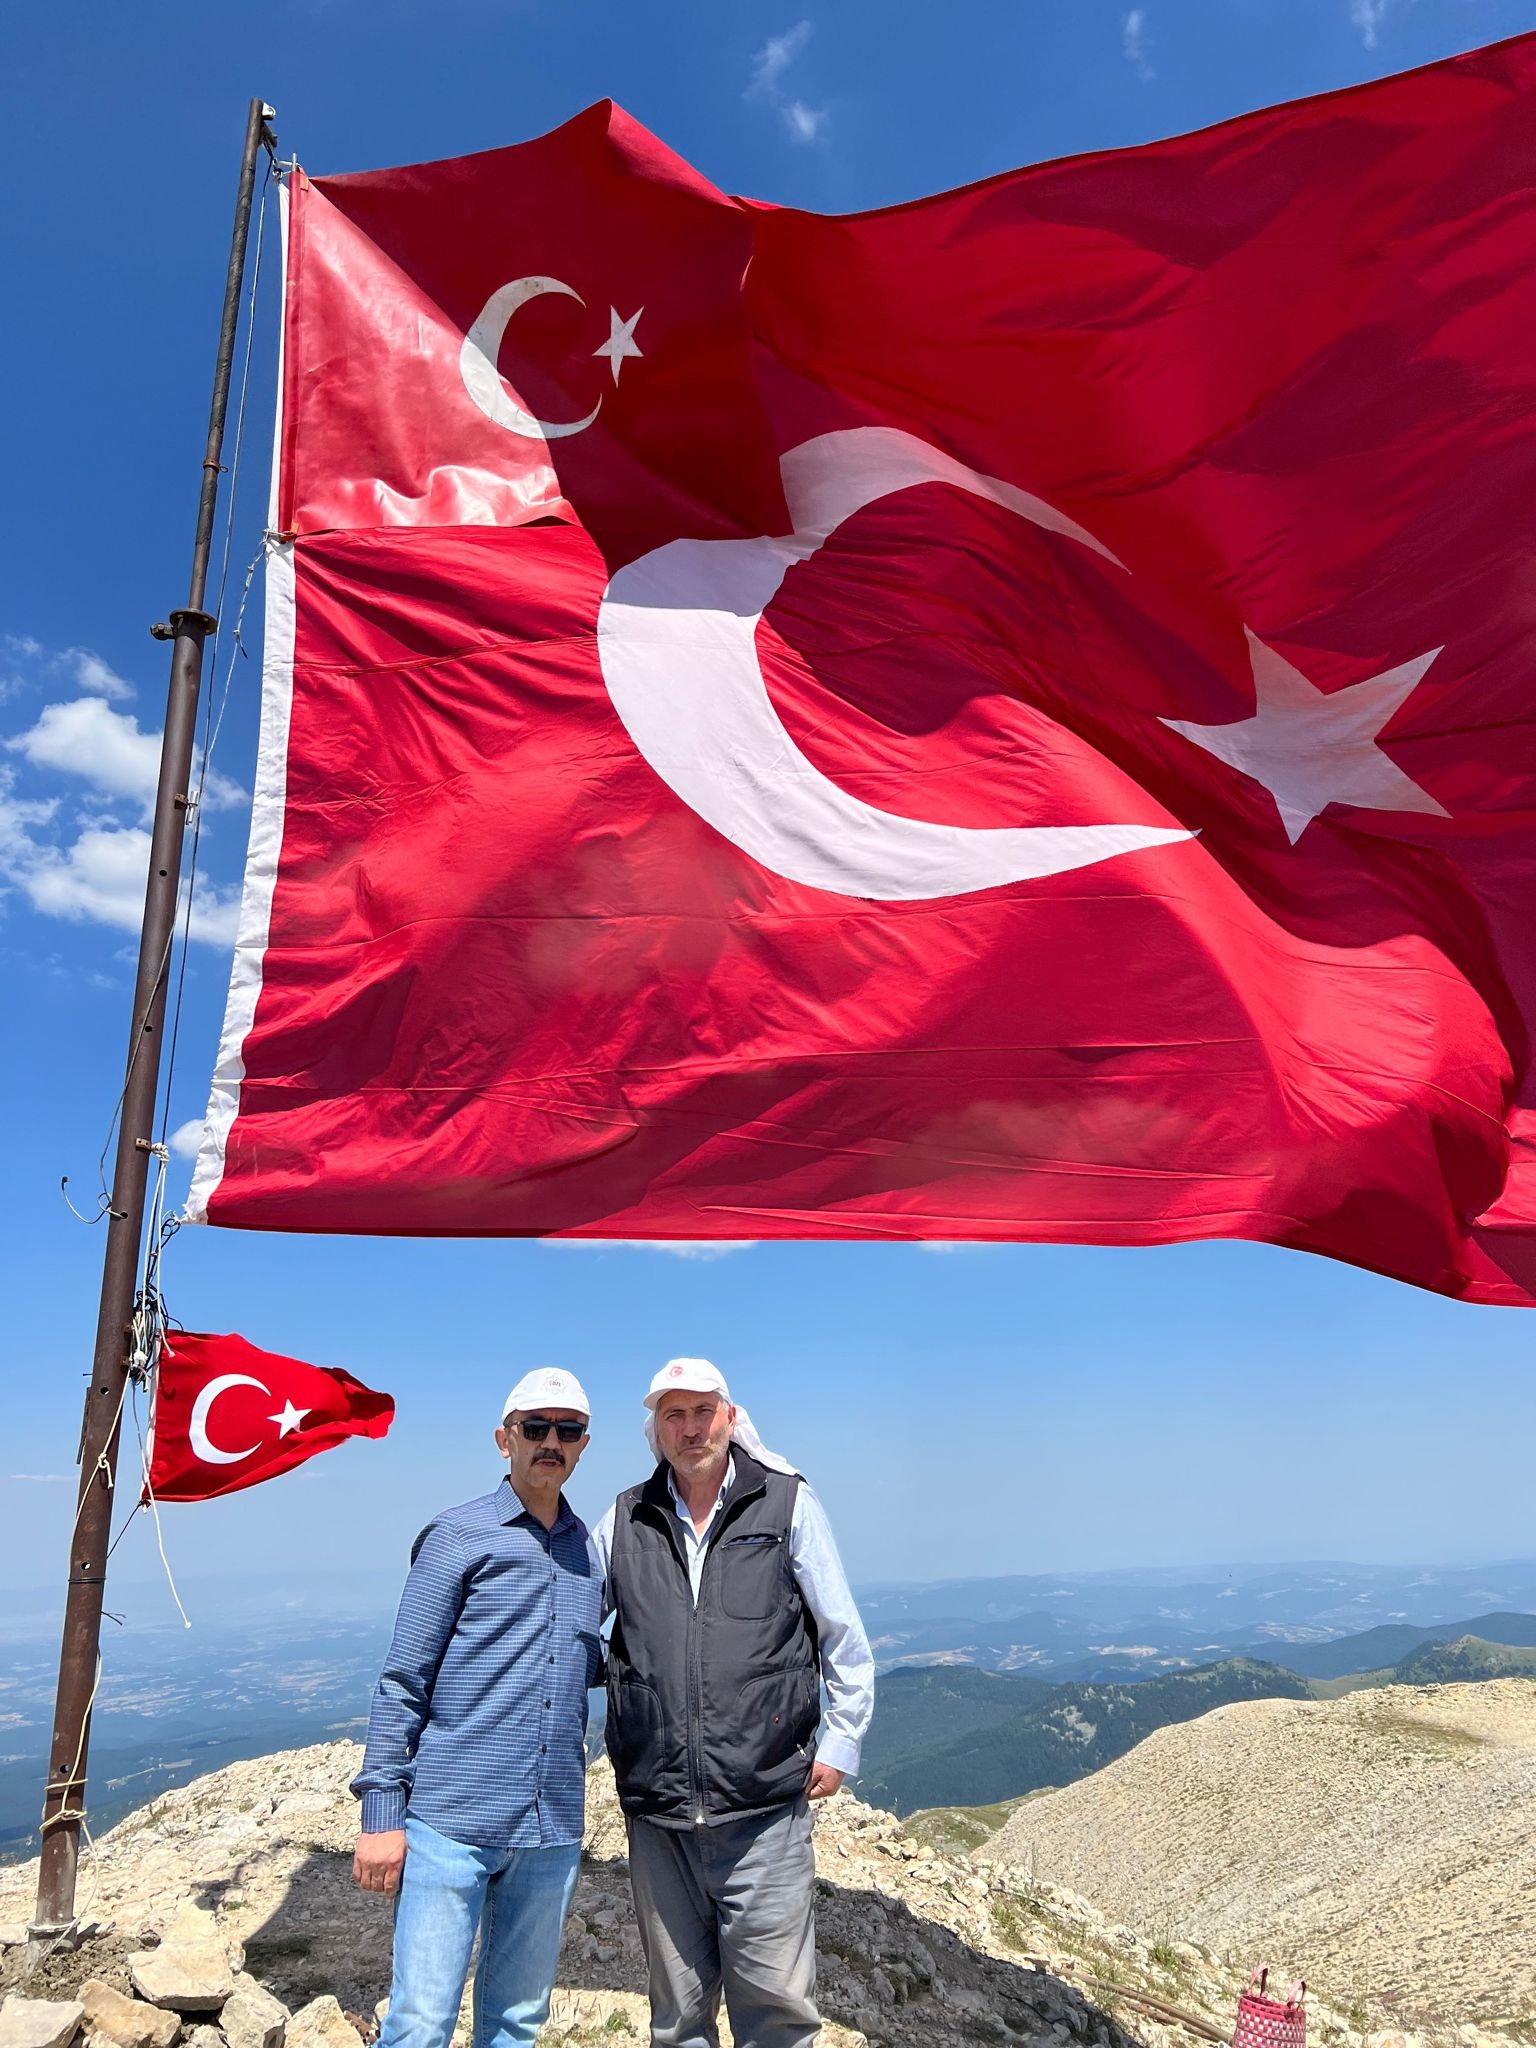  Dev Türk bayrağı Ilgaz Dağı’nın zirvesinde dalgalandı